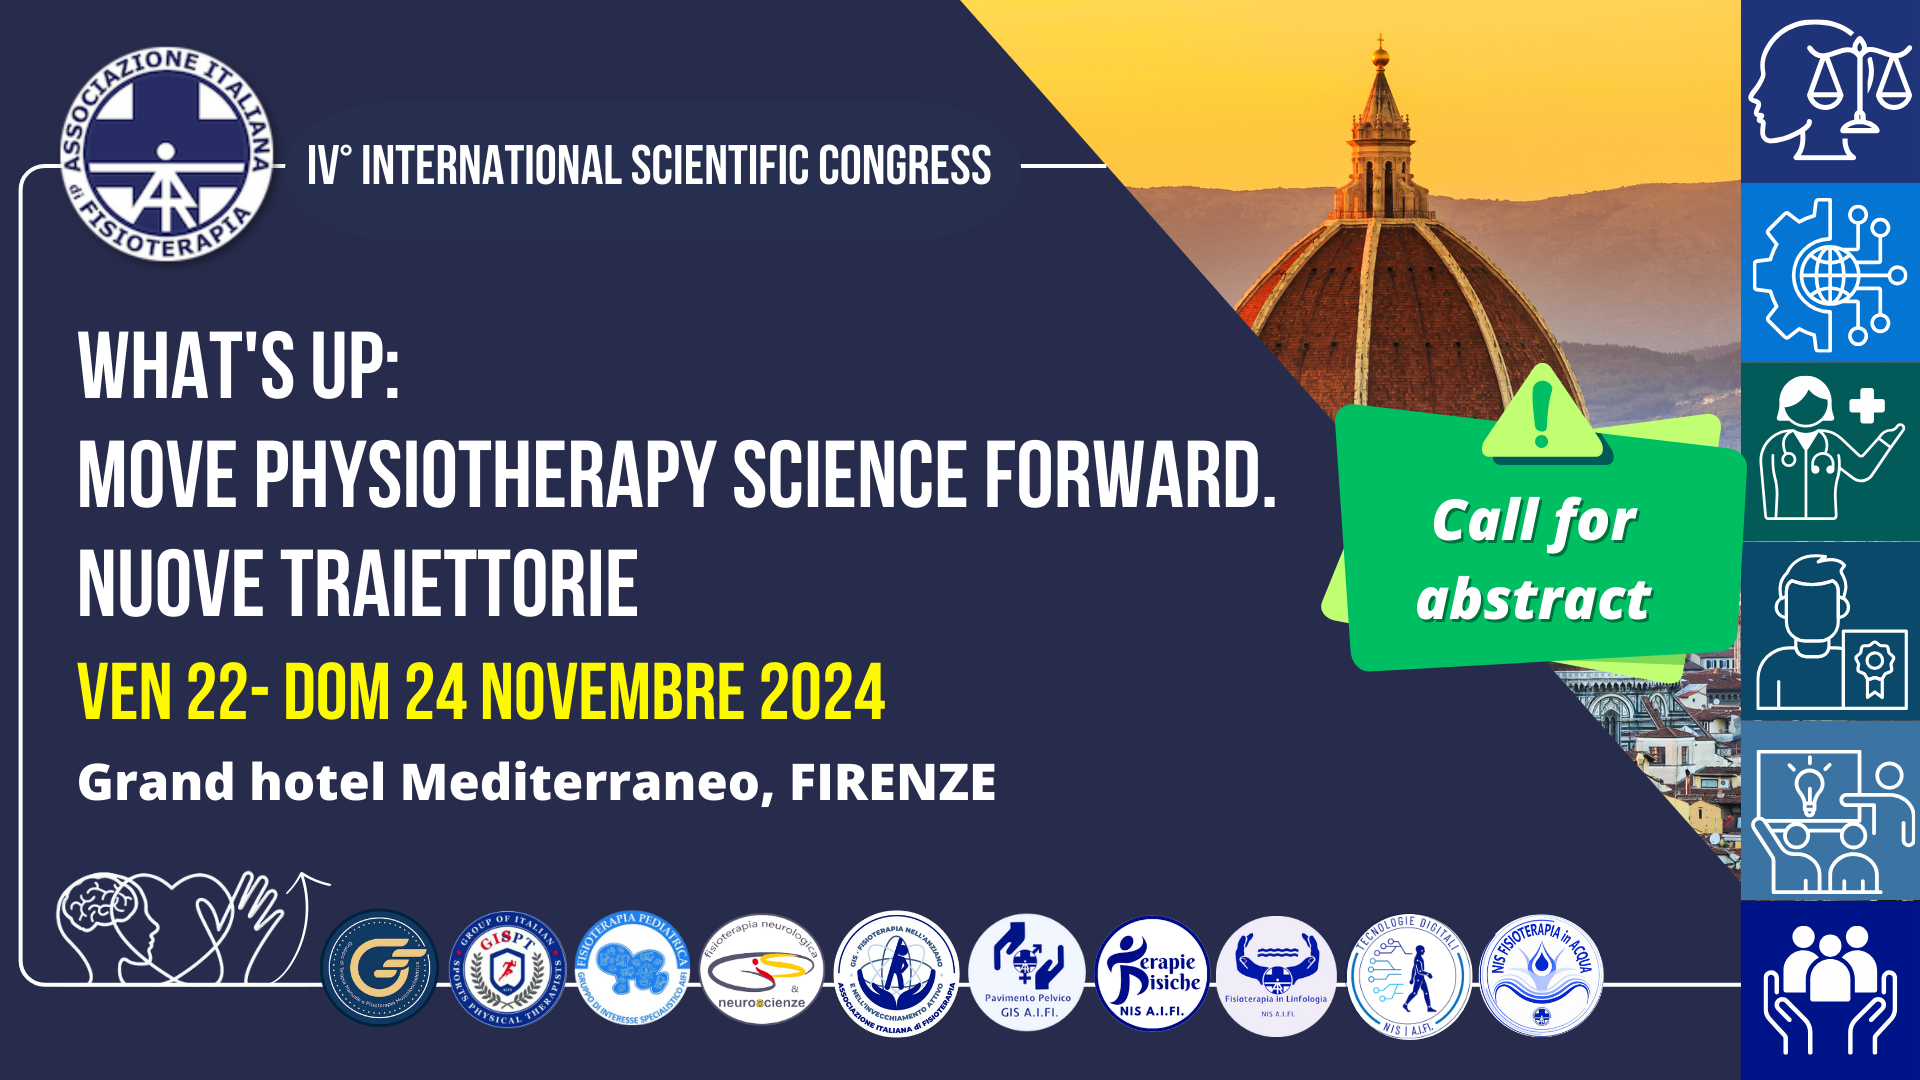 Aperta la Call for Abstract per il IV° International Scientific Congress di AIFI 2024 del 22-24 novembre a Firenze